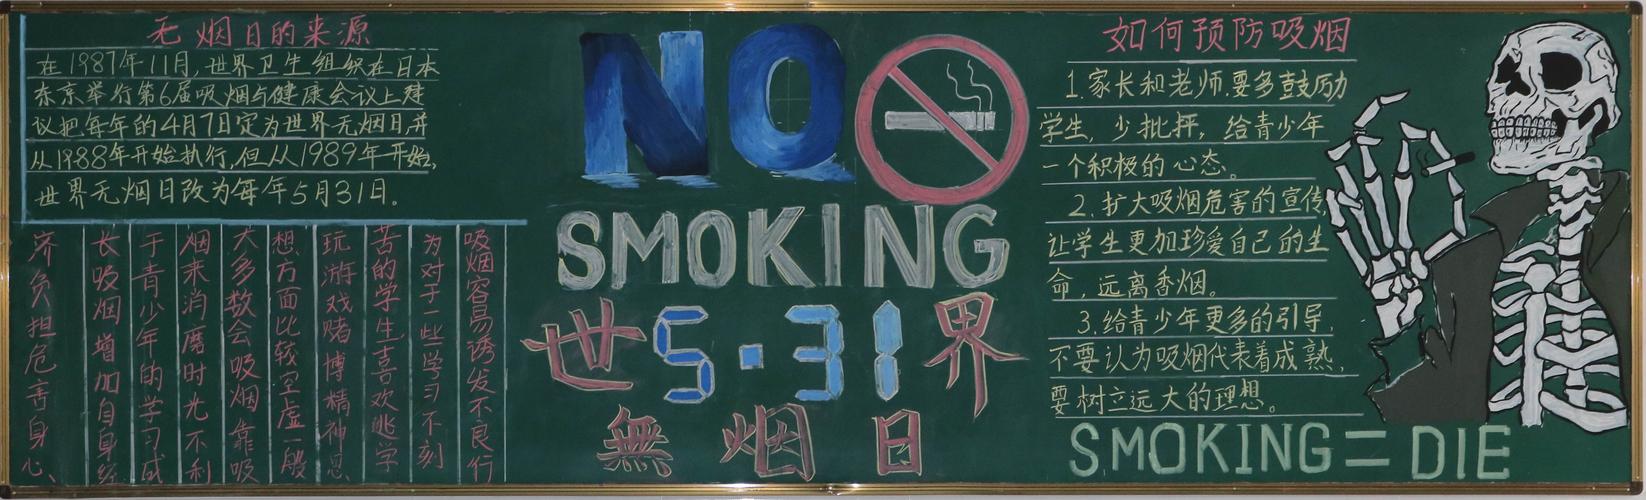 吸烟的害处黑板报 黑板报图片素材